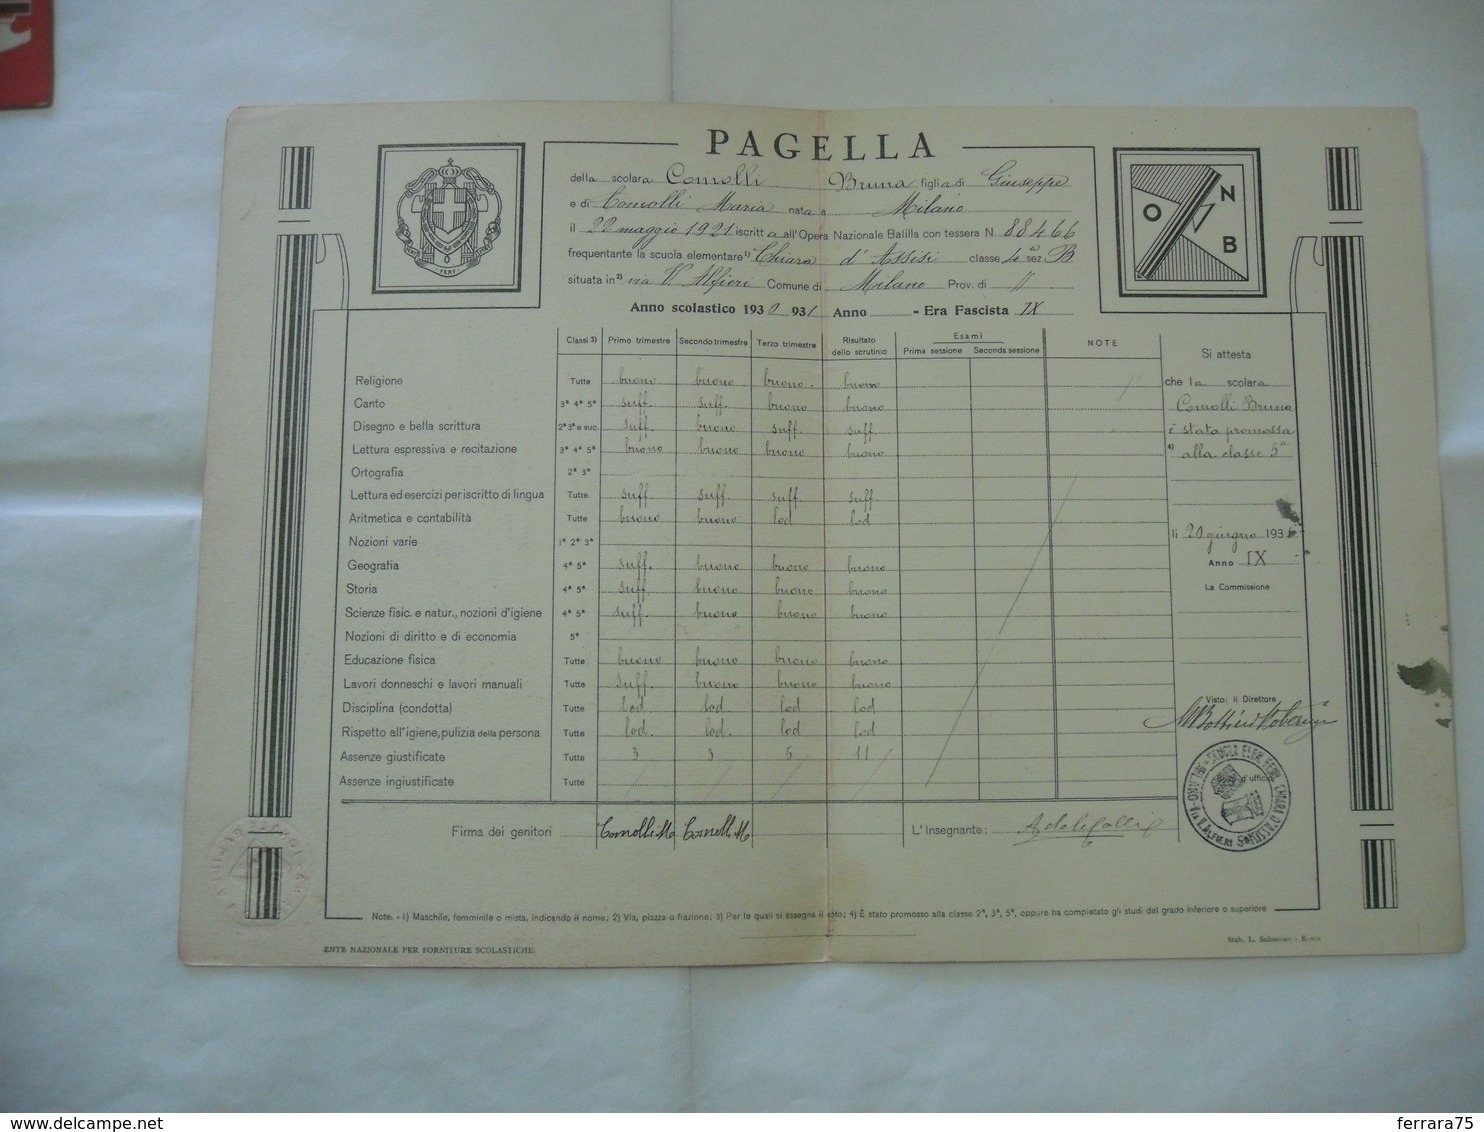 PAGELLA SCOLASTICA ONB GIL ANNO 1930-1931  MILANO - Diplomi E Pagelle